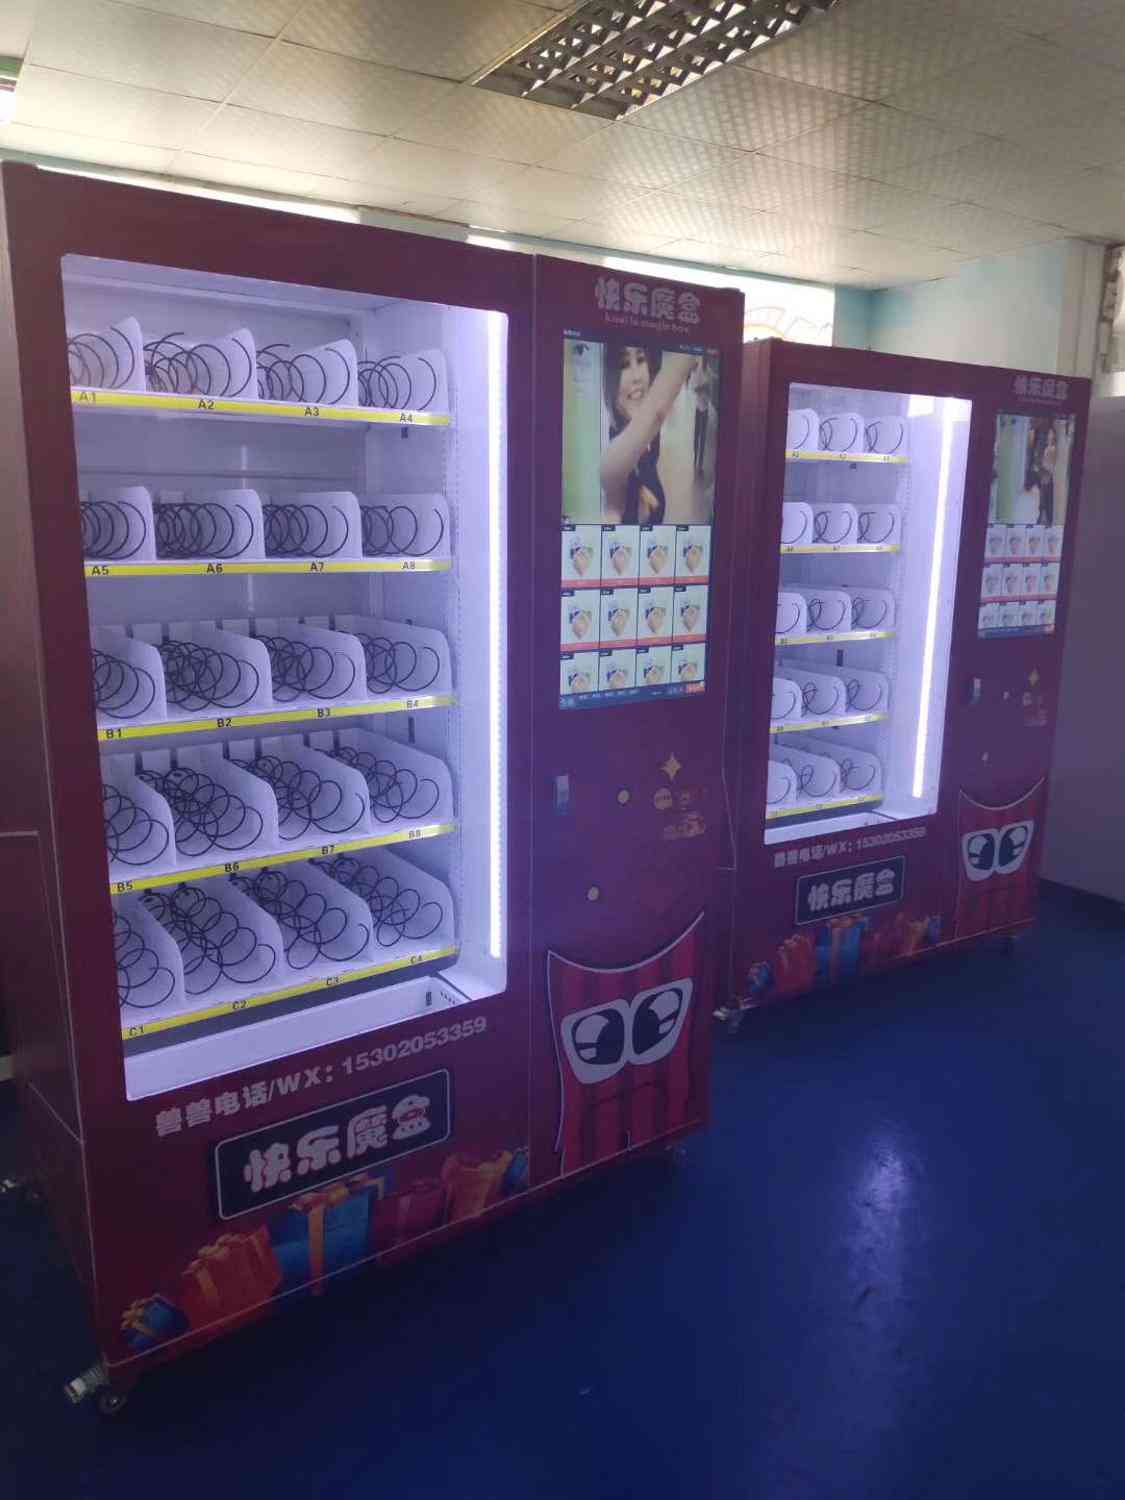 Selvbetjeningsbutikker, drikke og snacks - automatautomatskap